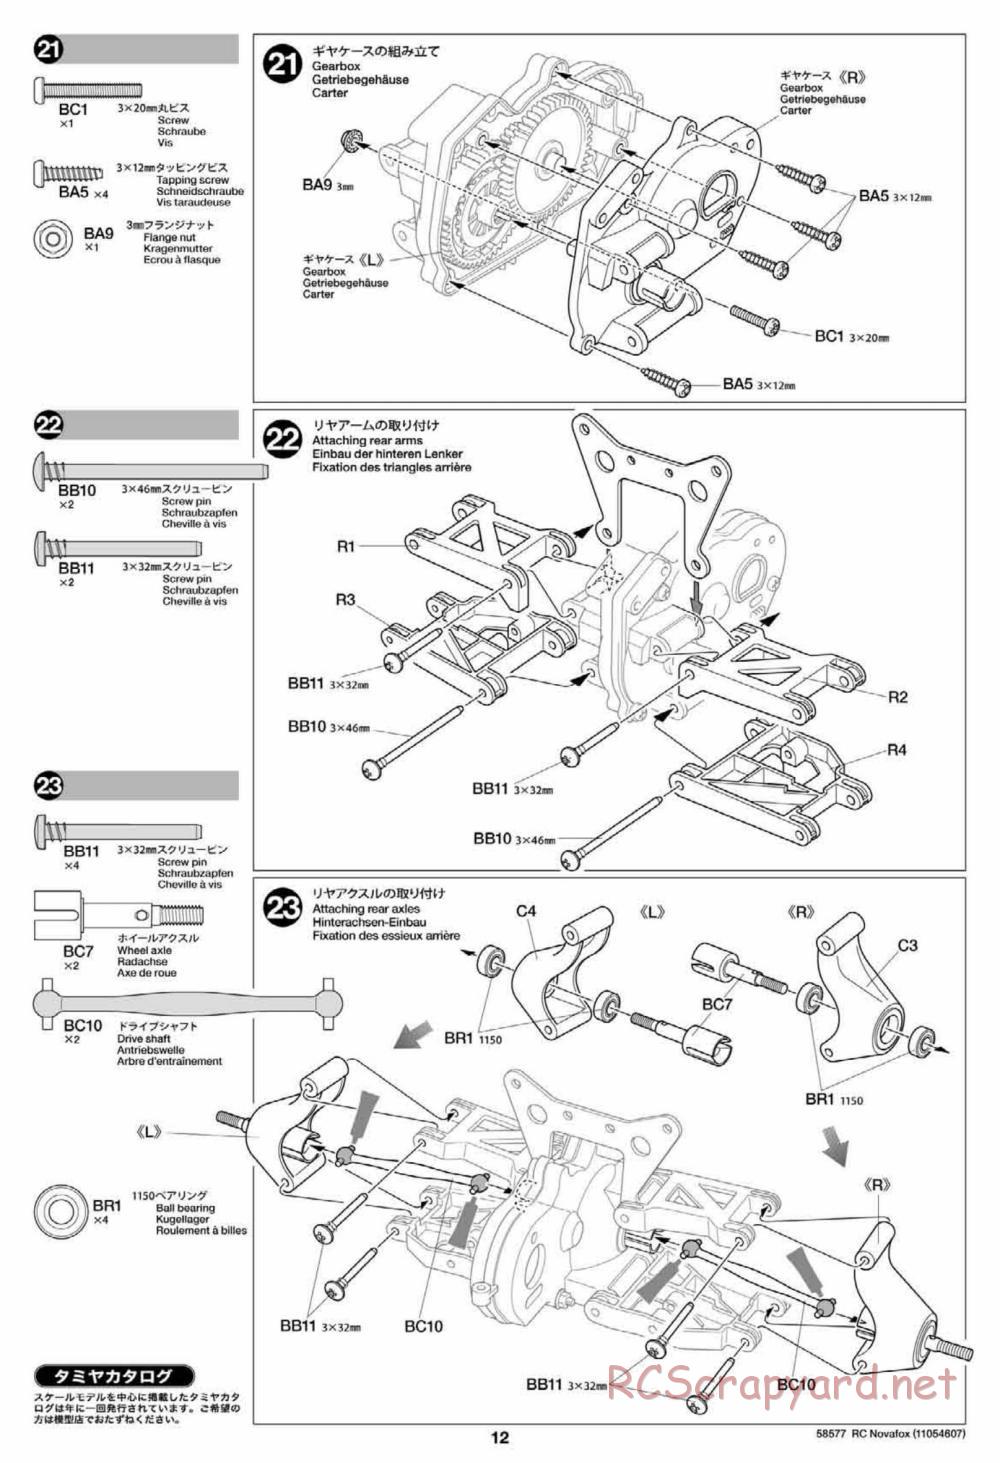 Tamiya - Novafox Chassis - Manual - Page 12